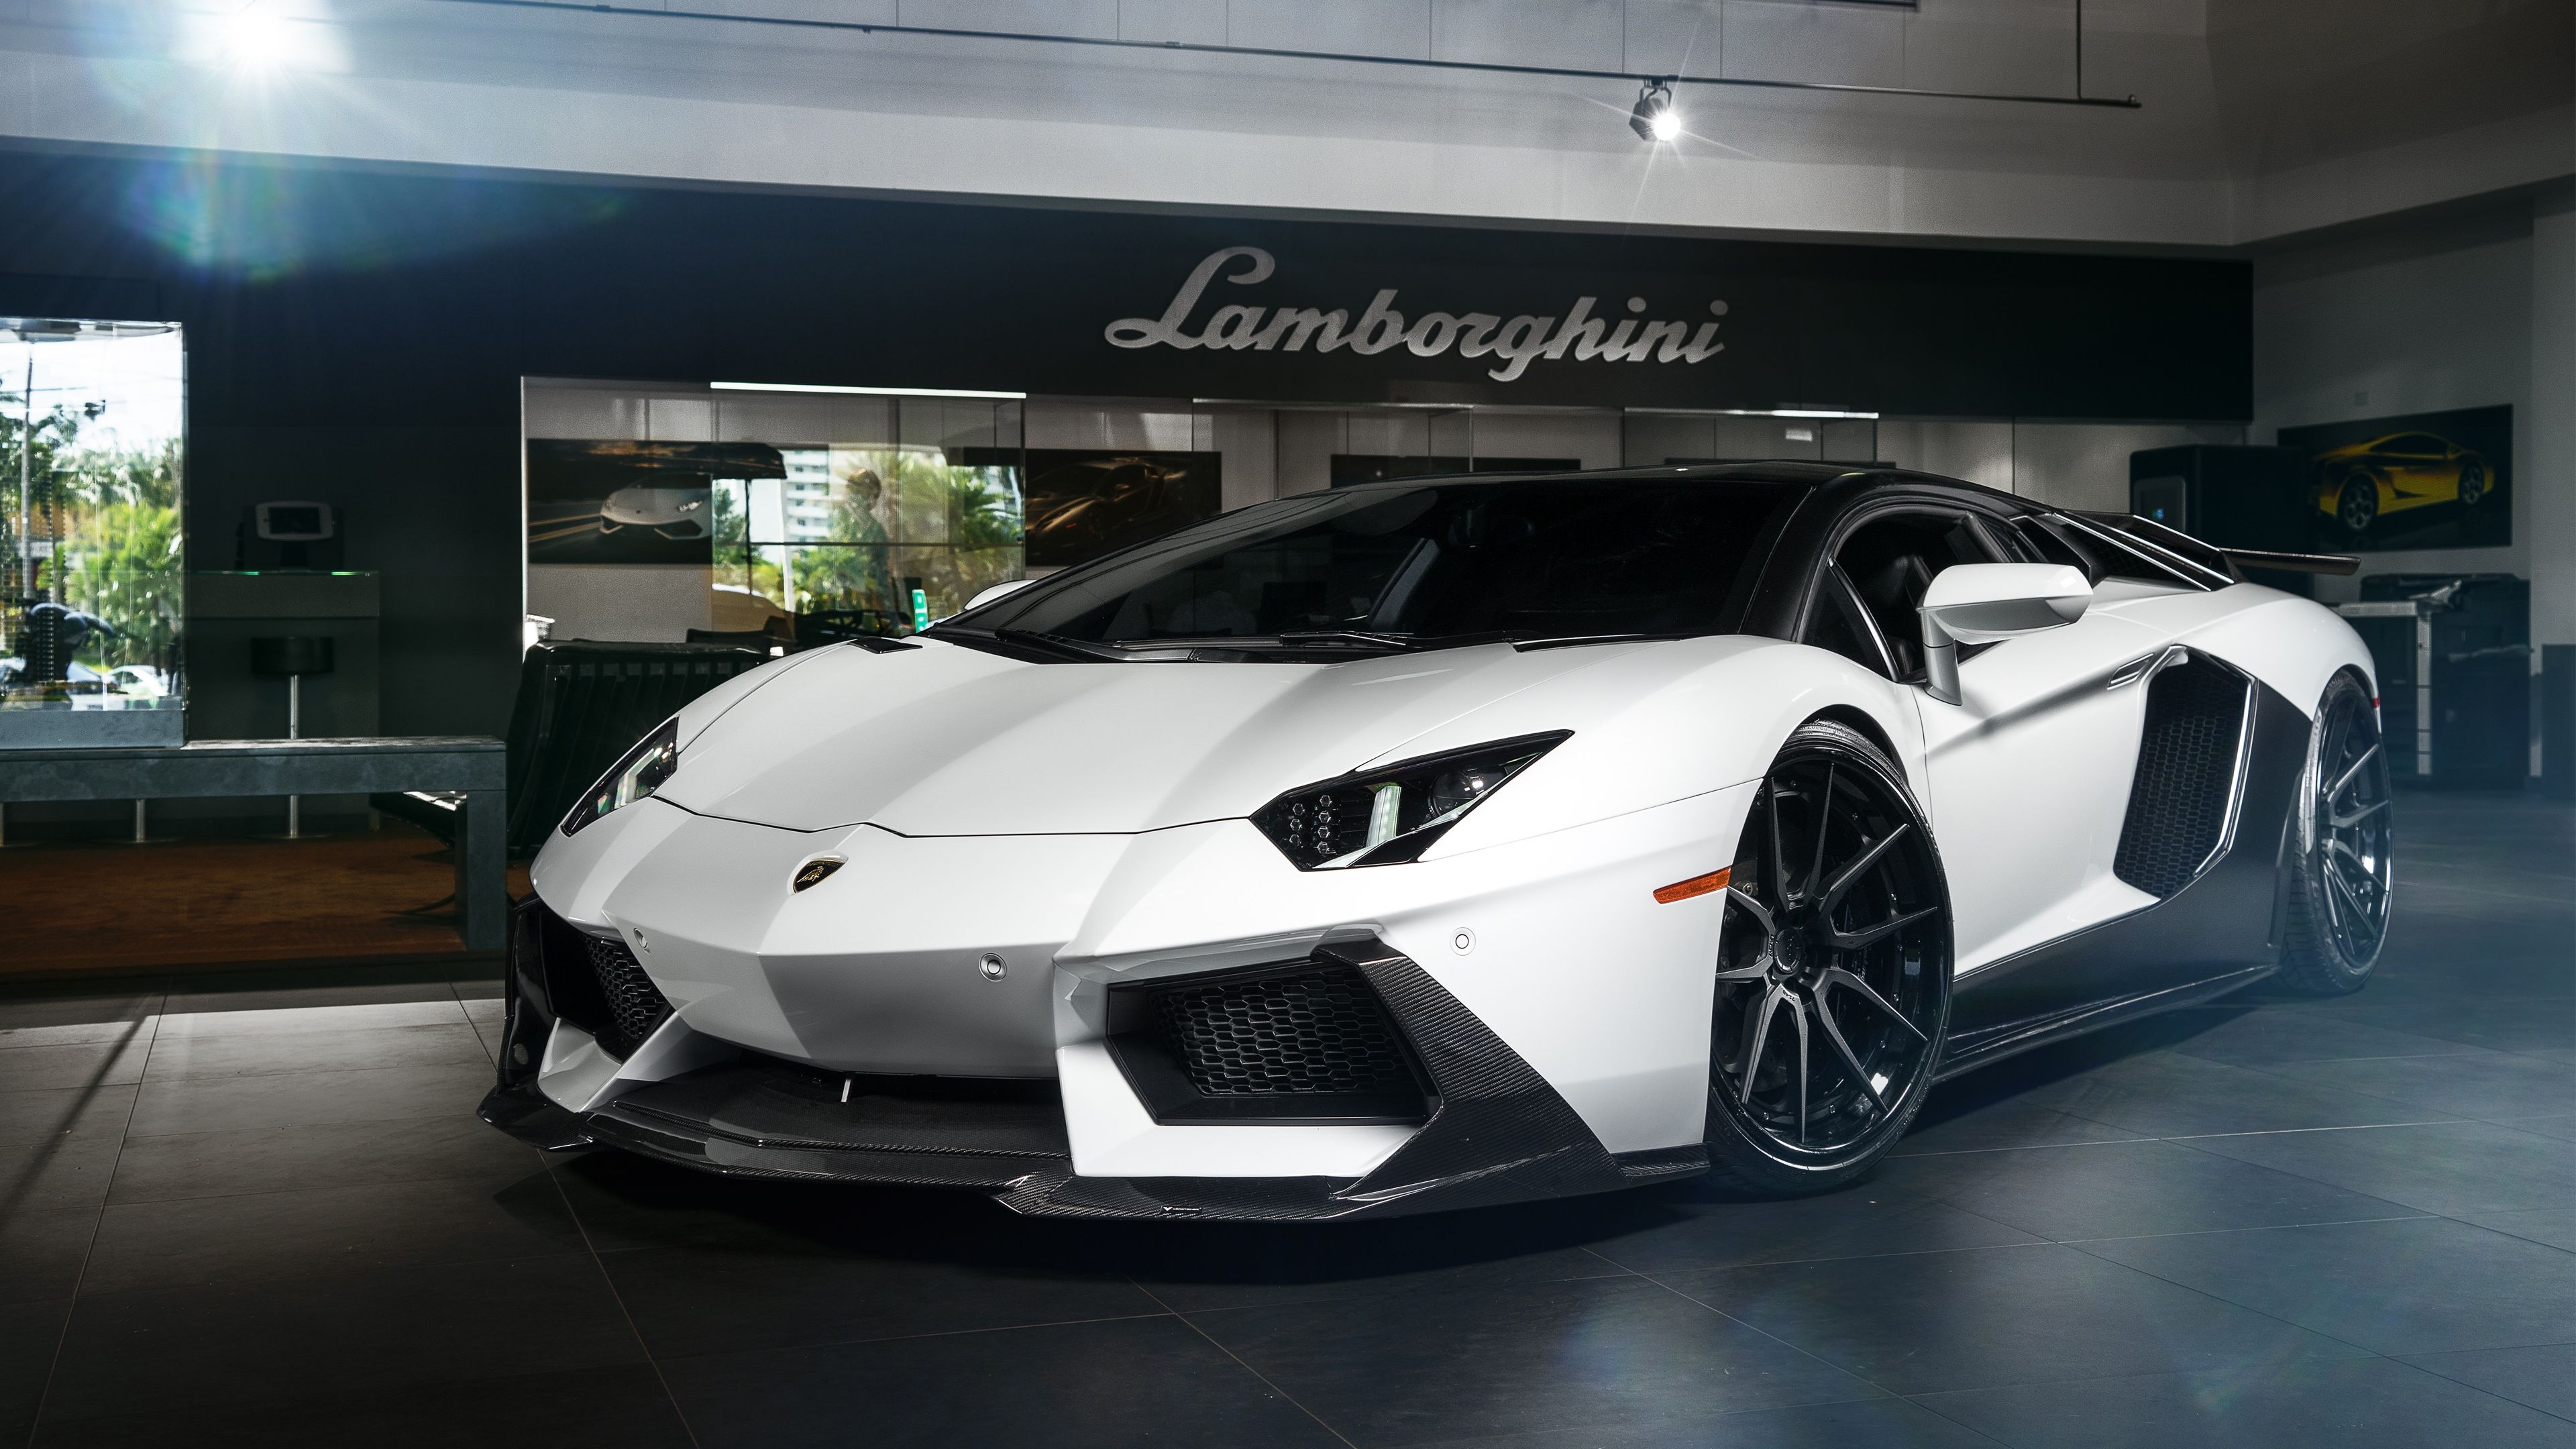 Lamborghini Wallpapers | Lamborghini Pictures | Lamborghini HD ...